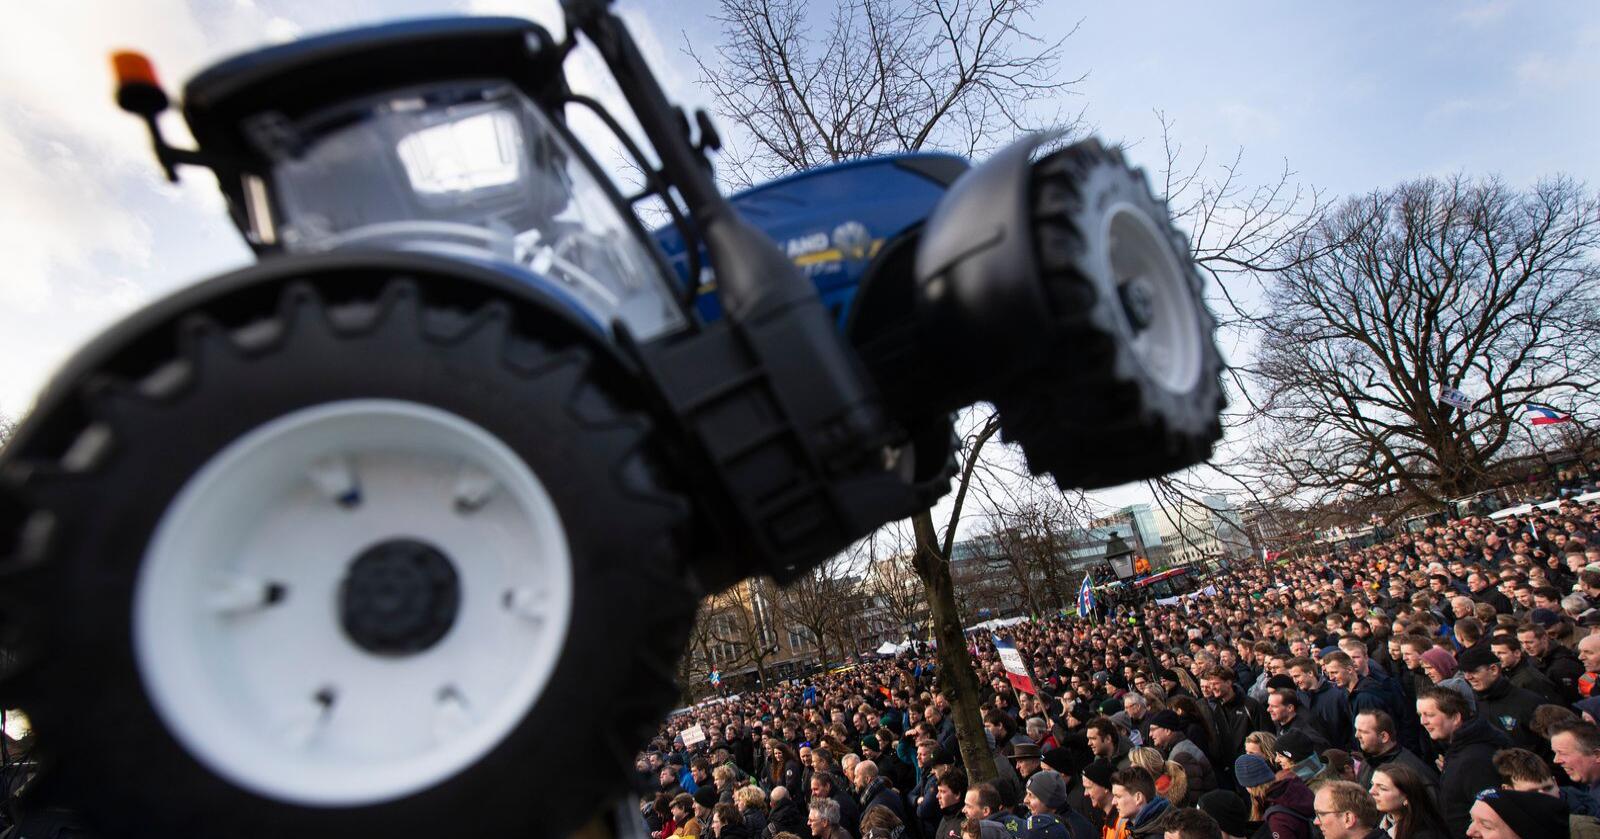 Bønder i Nederland har allerede tatt til gatene etter myndighetens plan for å redusere nitrogenutslipp i landet. Foto: AP/Peter Dejong/NTB